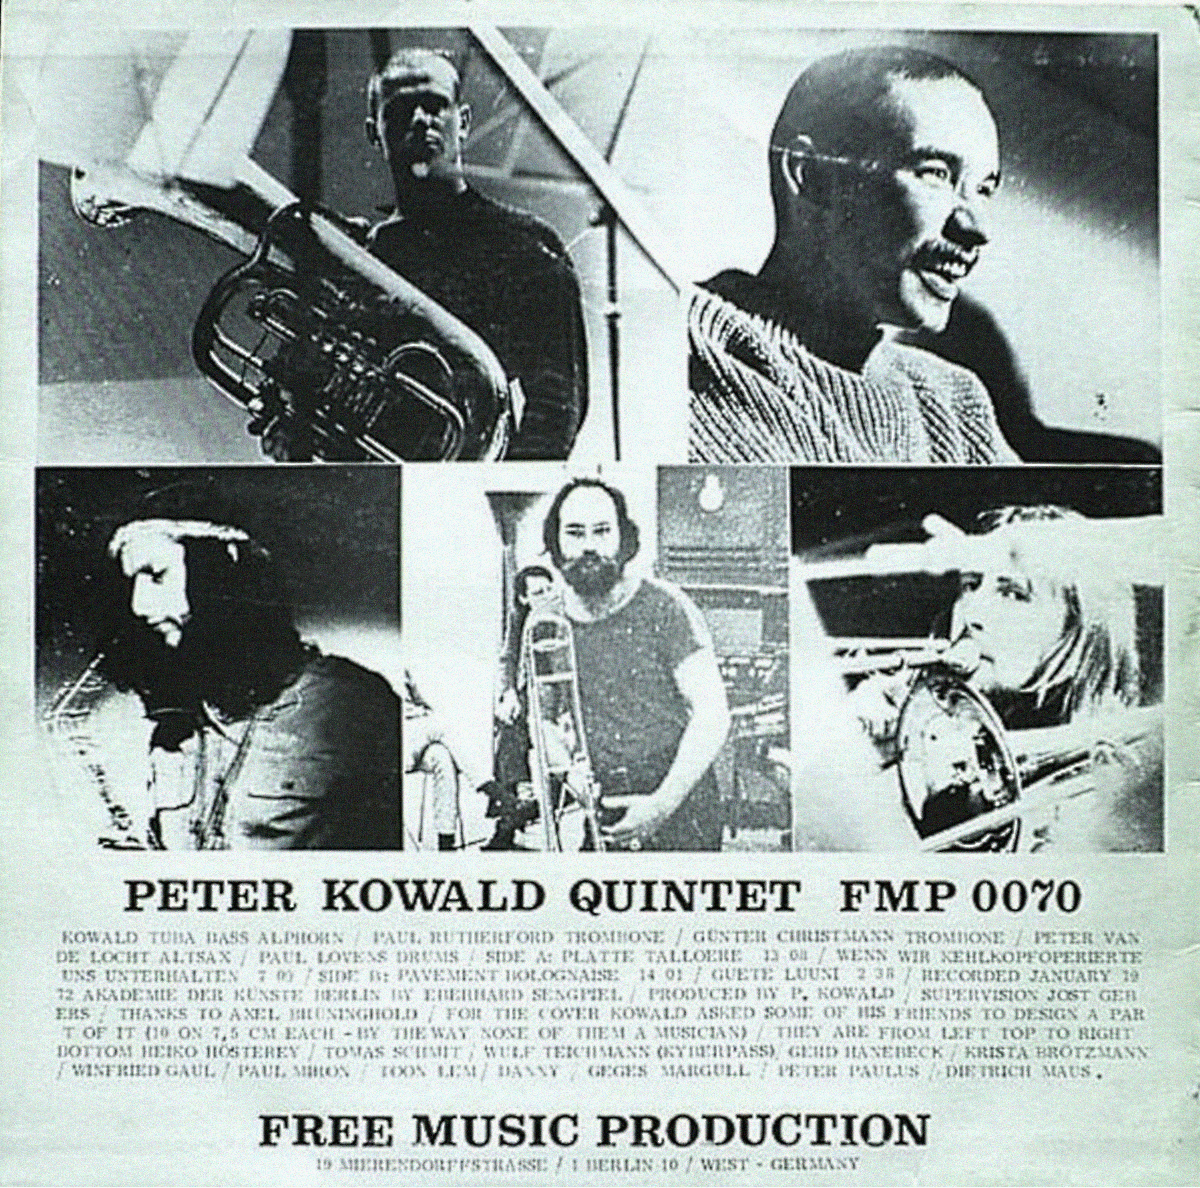 Peter Kowald Quintet